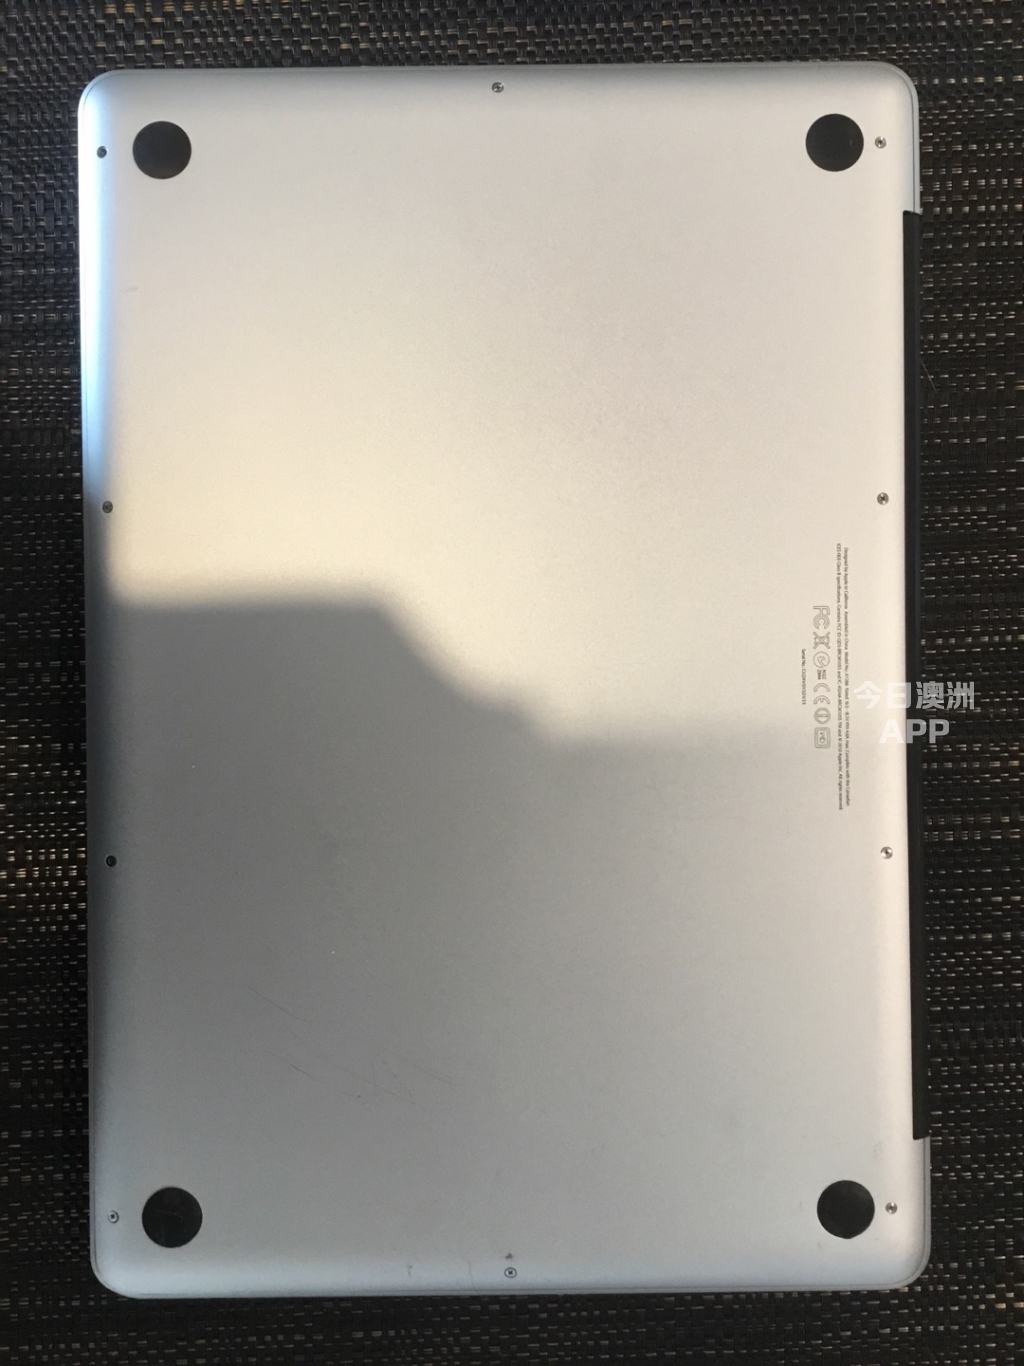 Macbook Pro 2012款 154寸 頂配i7 4核 512內存 記憶卡8G 筆記本